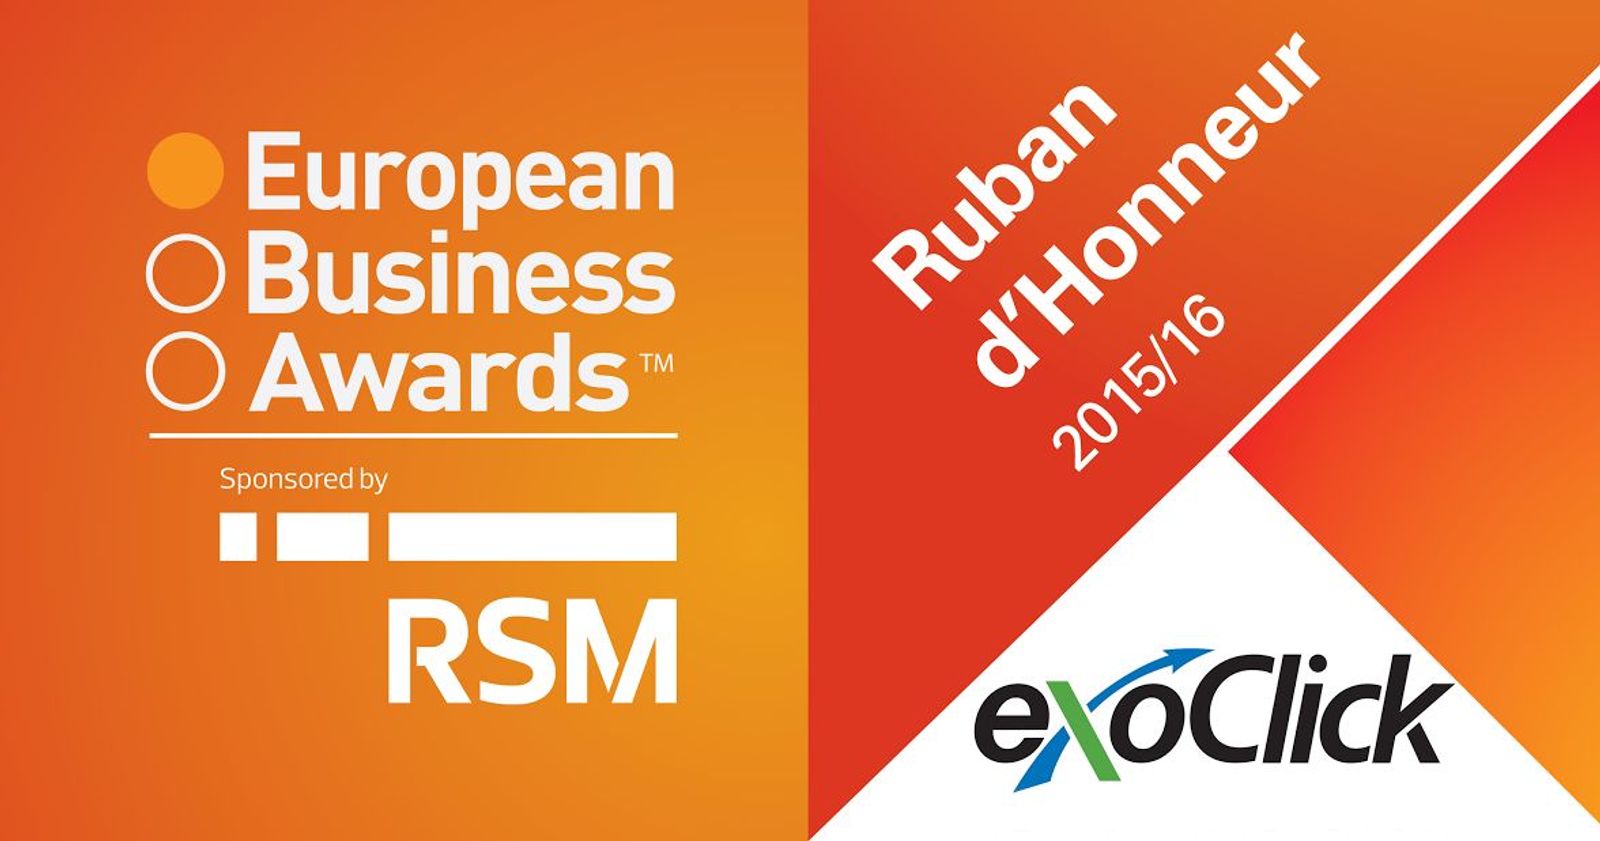 ExoClick Wins Ruban d’Honneur European Business Award